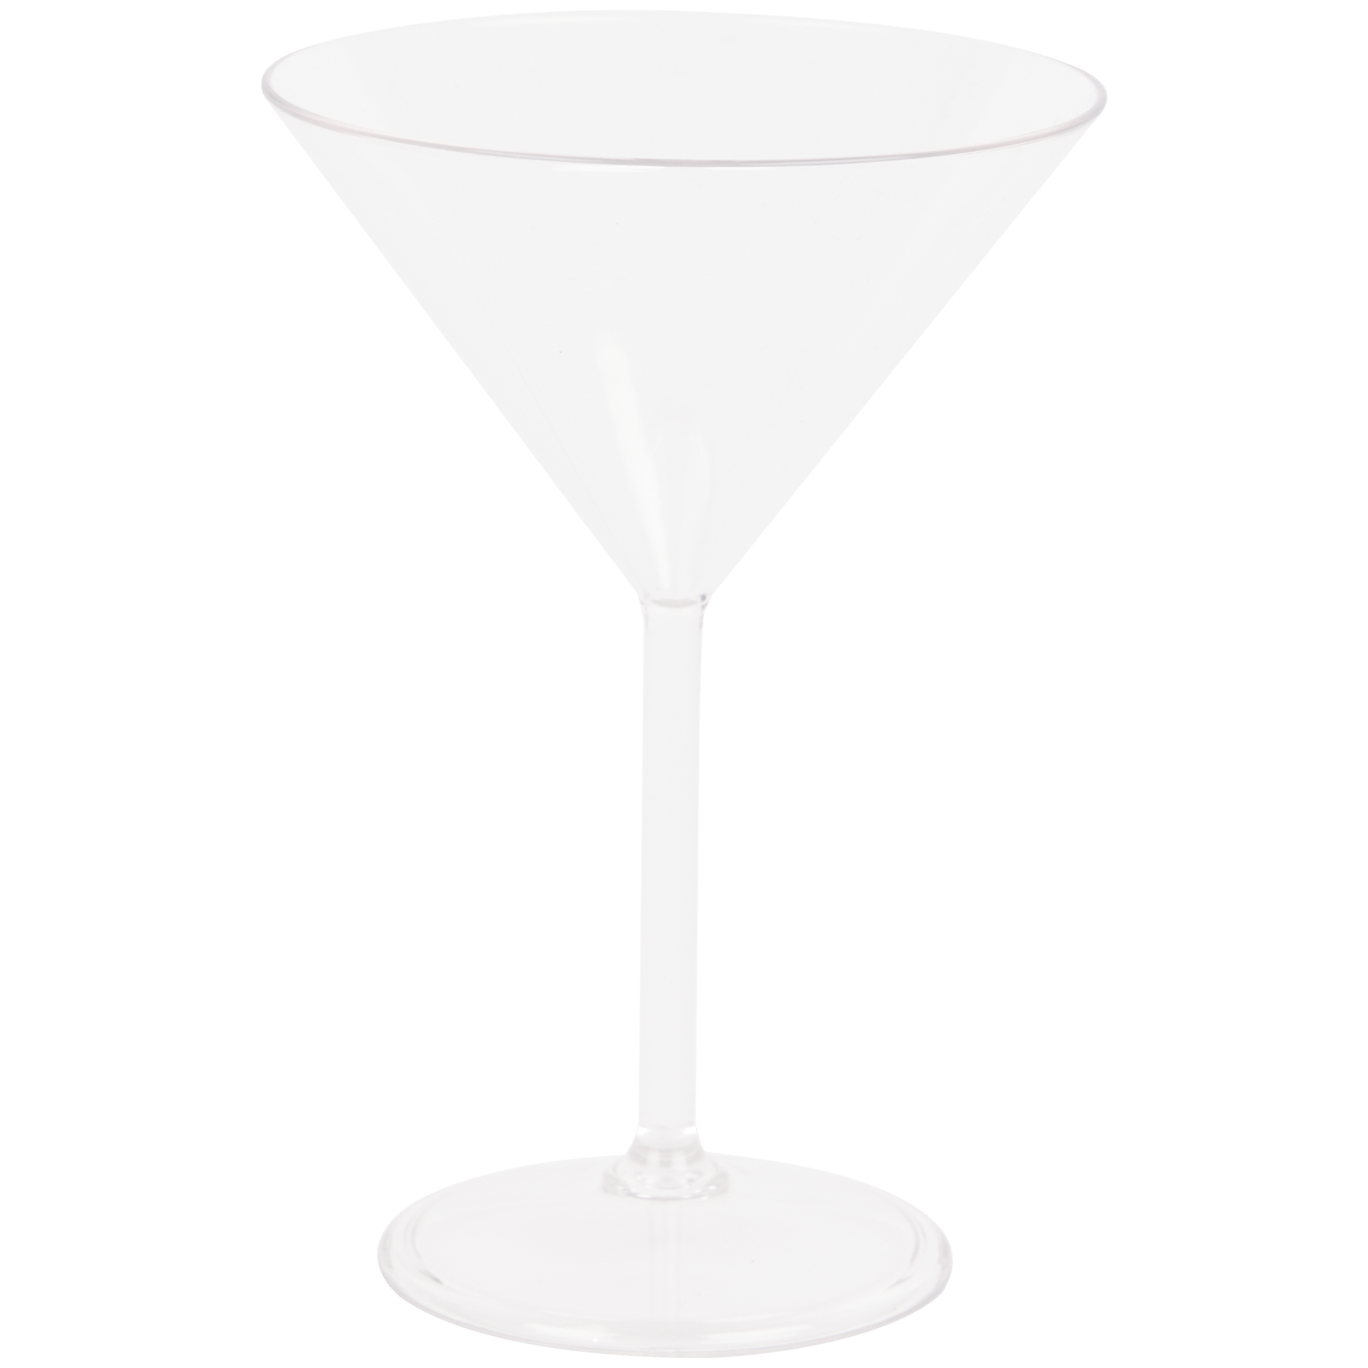 Gin-, Martini- oder Weinglas aus Kunststoff